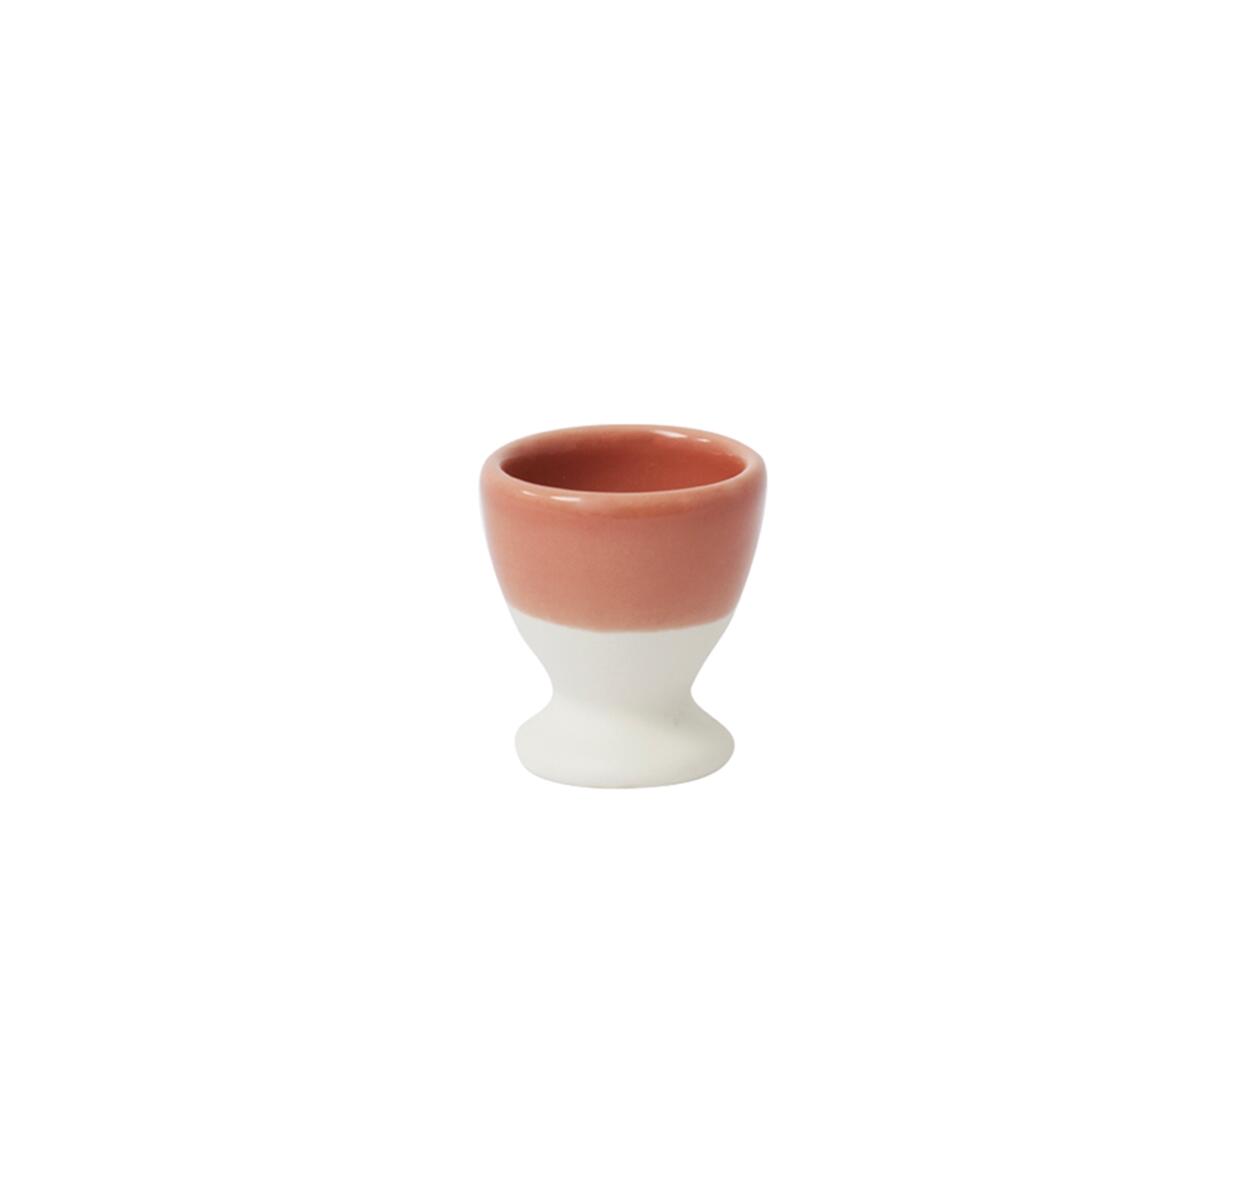 Order handmade ceramic eggcup by Jars online